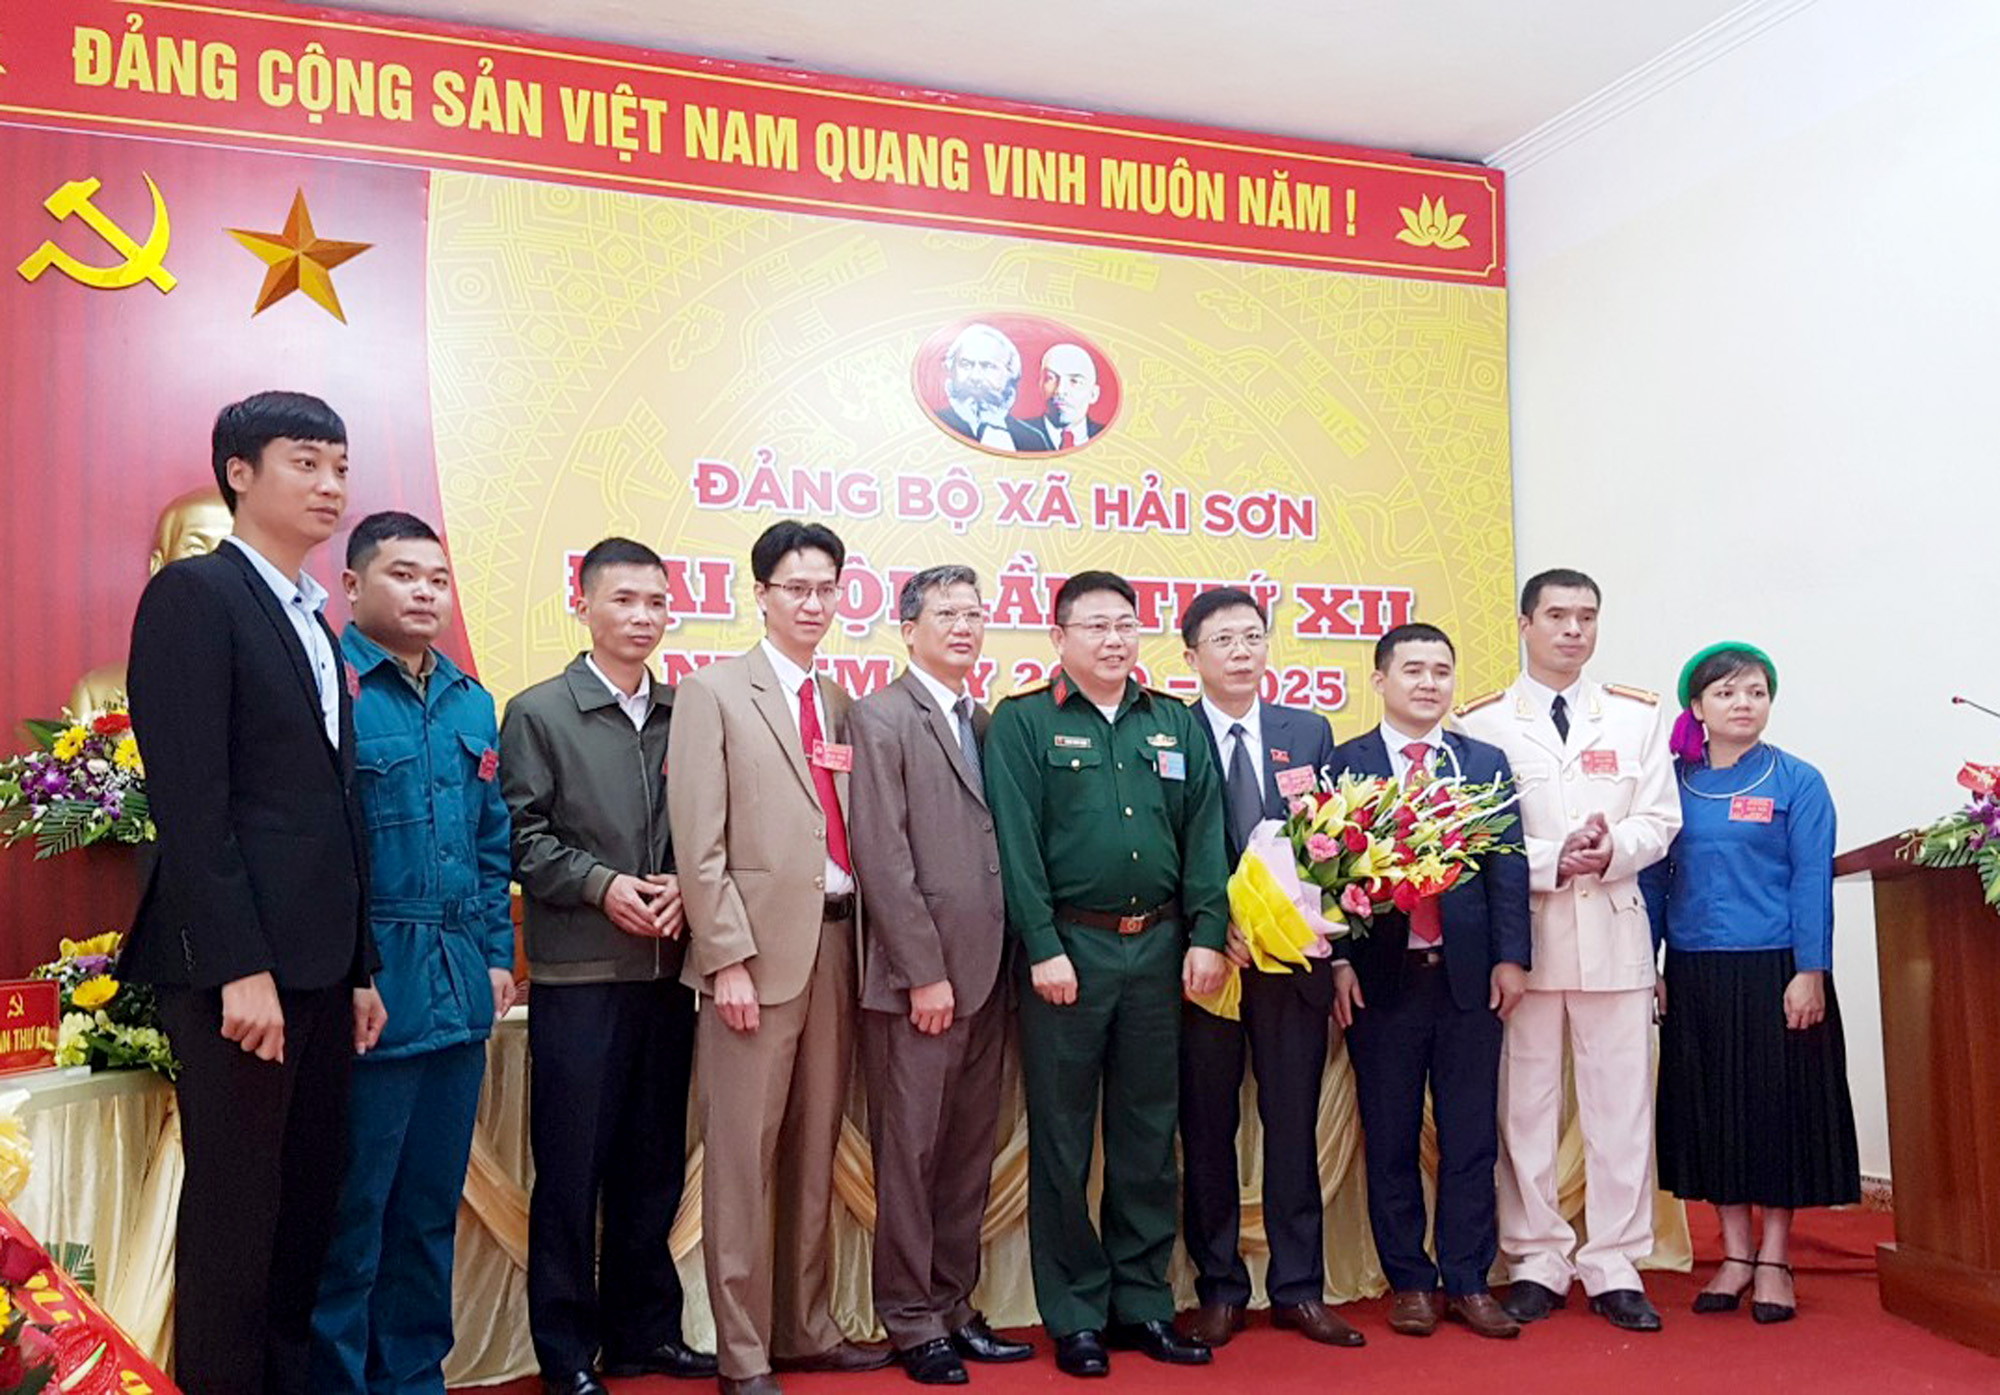 Đồng chí Mễ Quang Vinh được đảng viên tín nhiệm bầu giữ chức vụ Bí thư Đảng ủy xã Hải Sơn